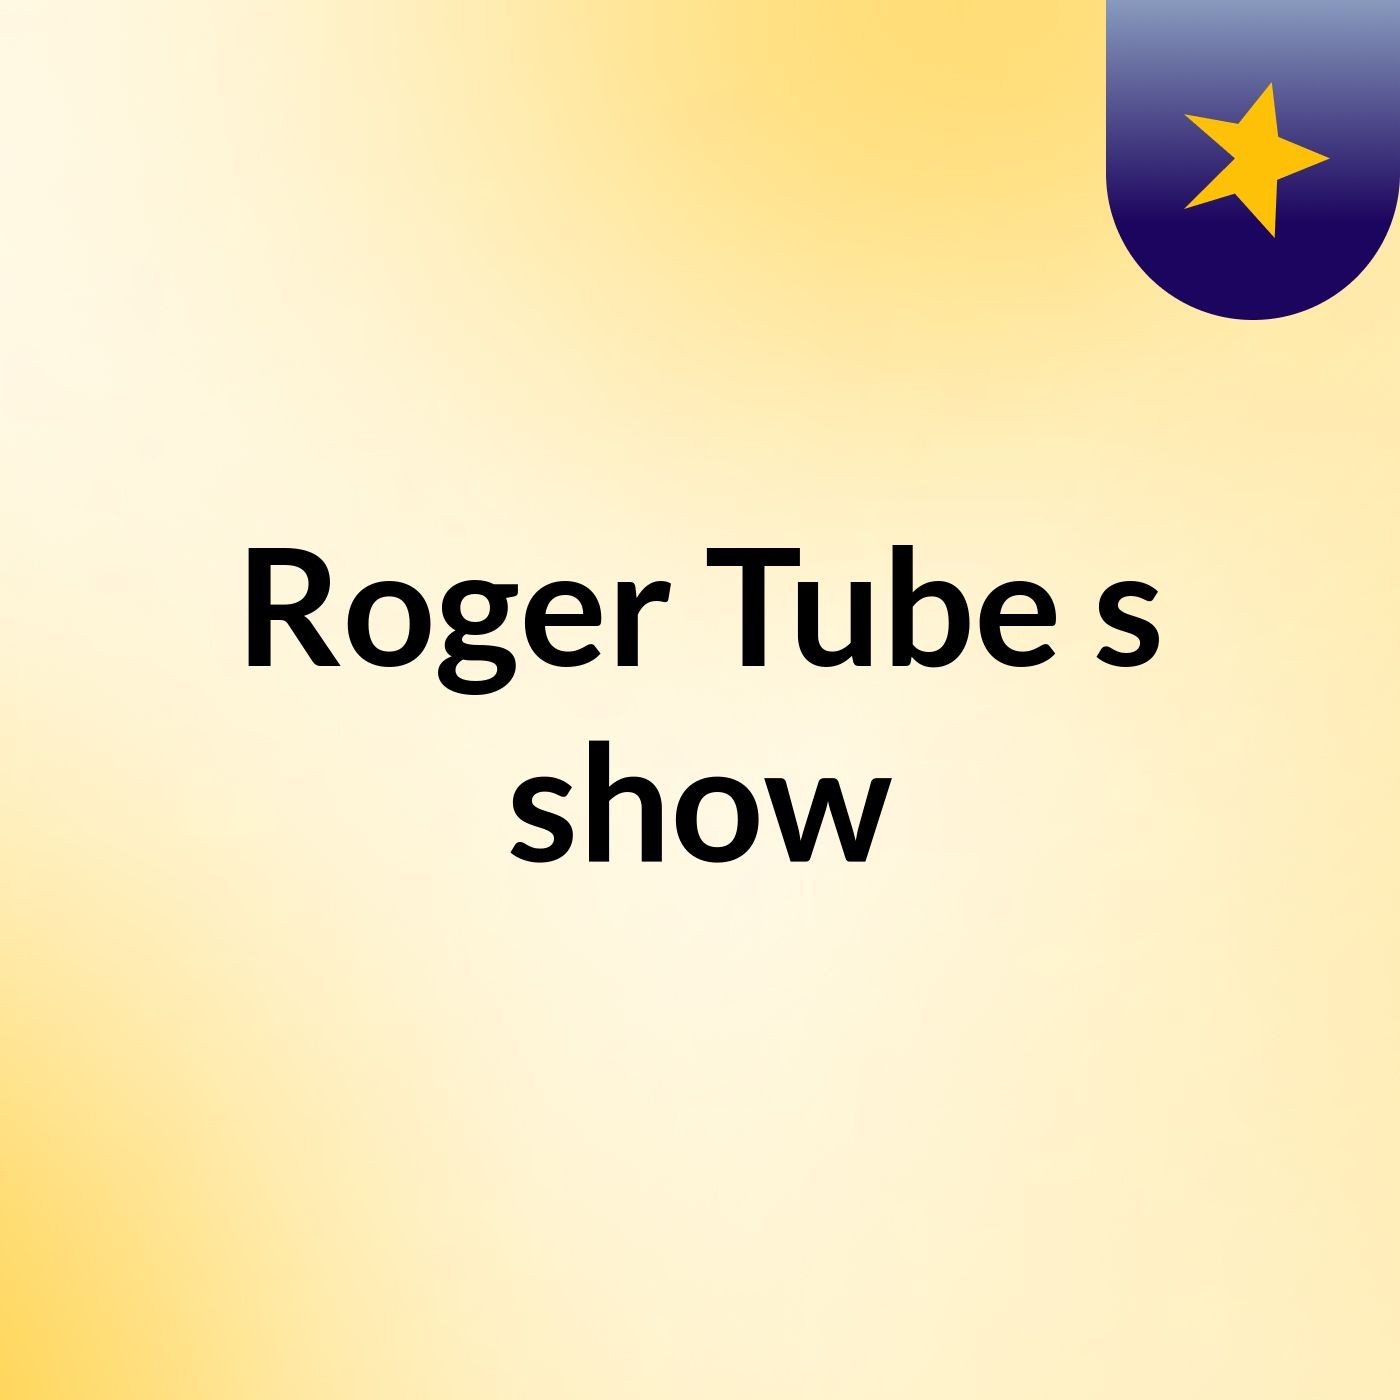 Roger Tube's show